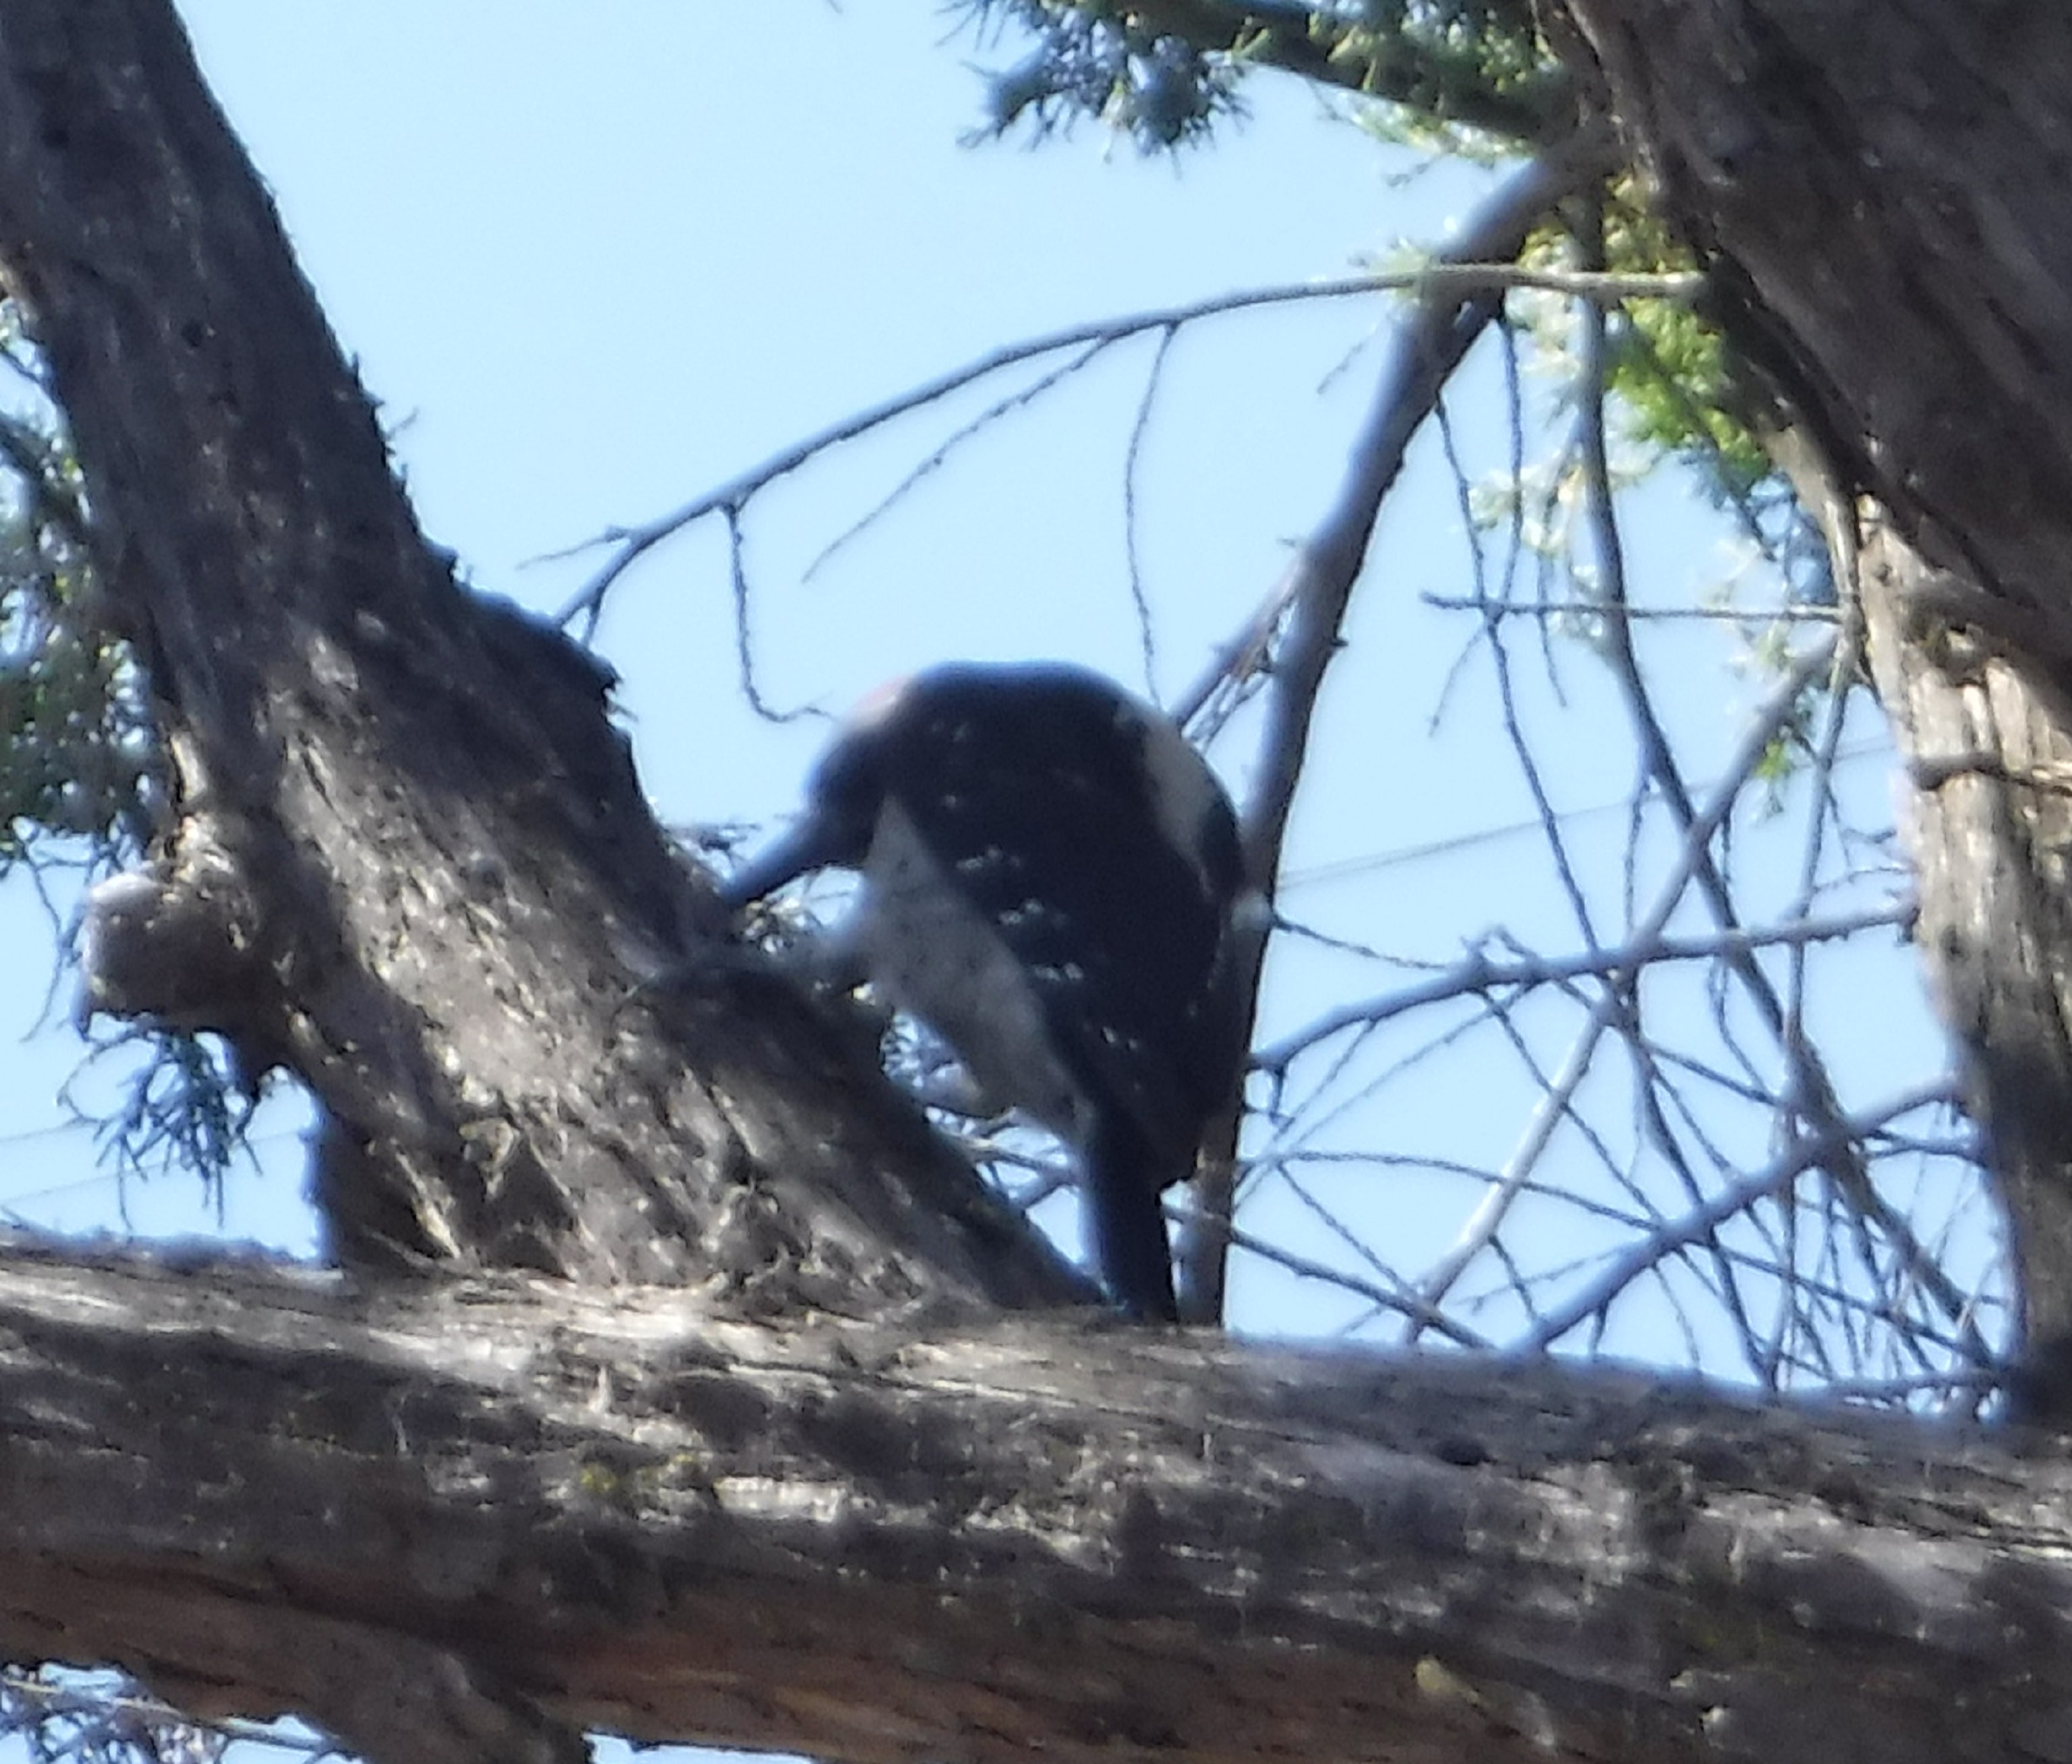 Photo taken by me of a woodpecker in a tree near work